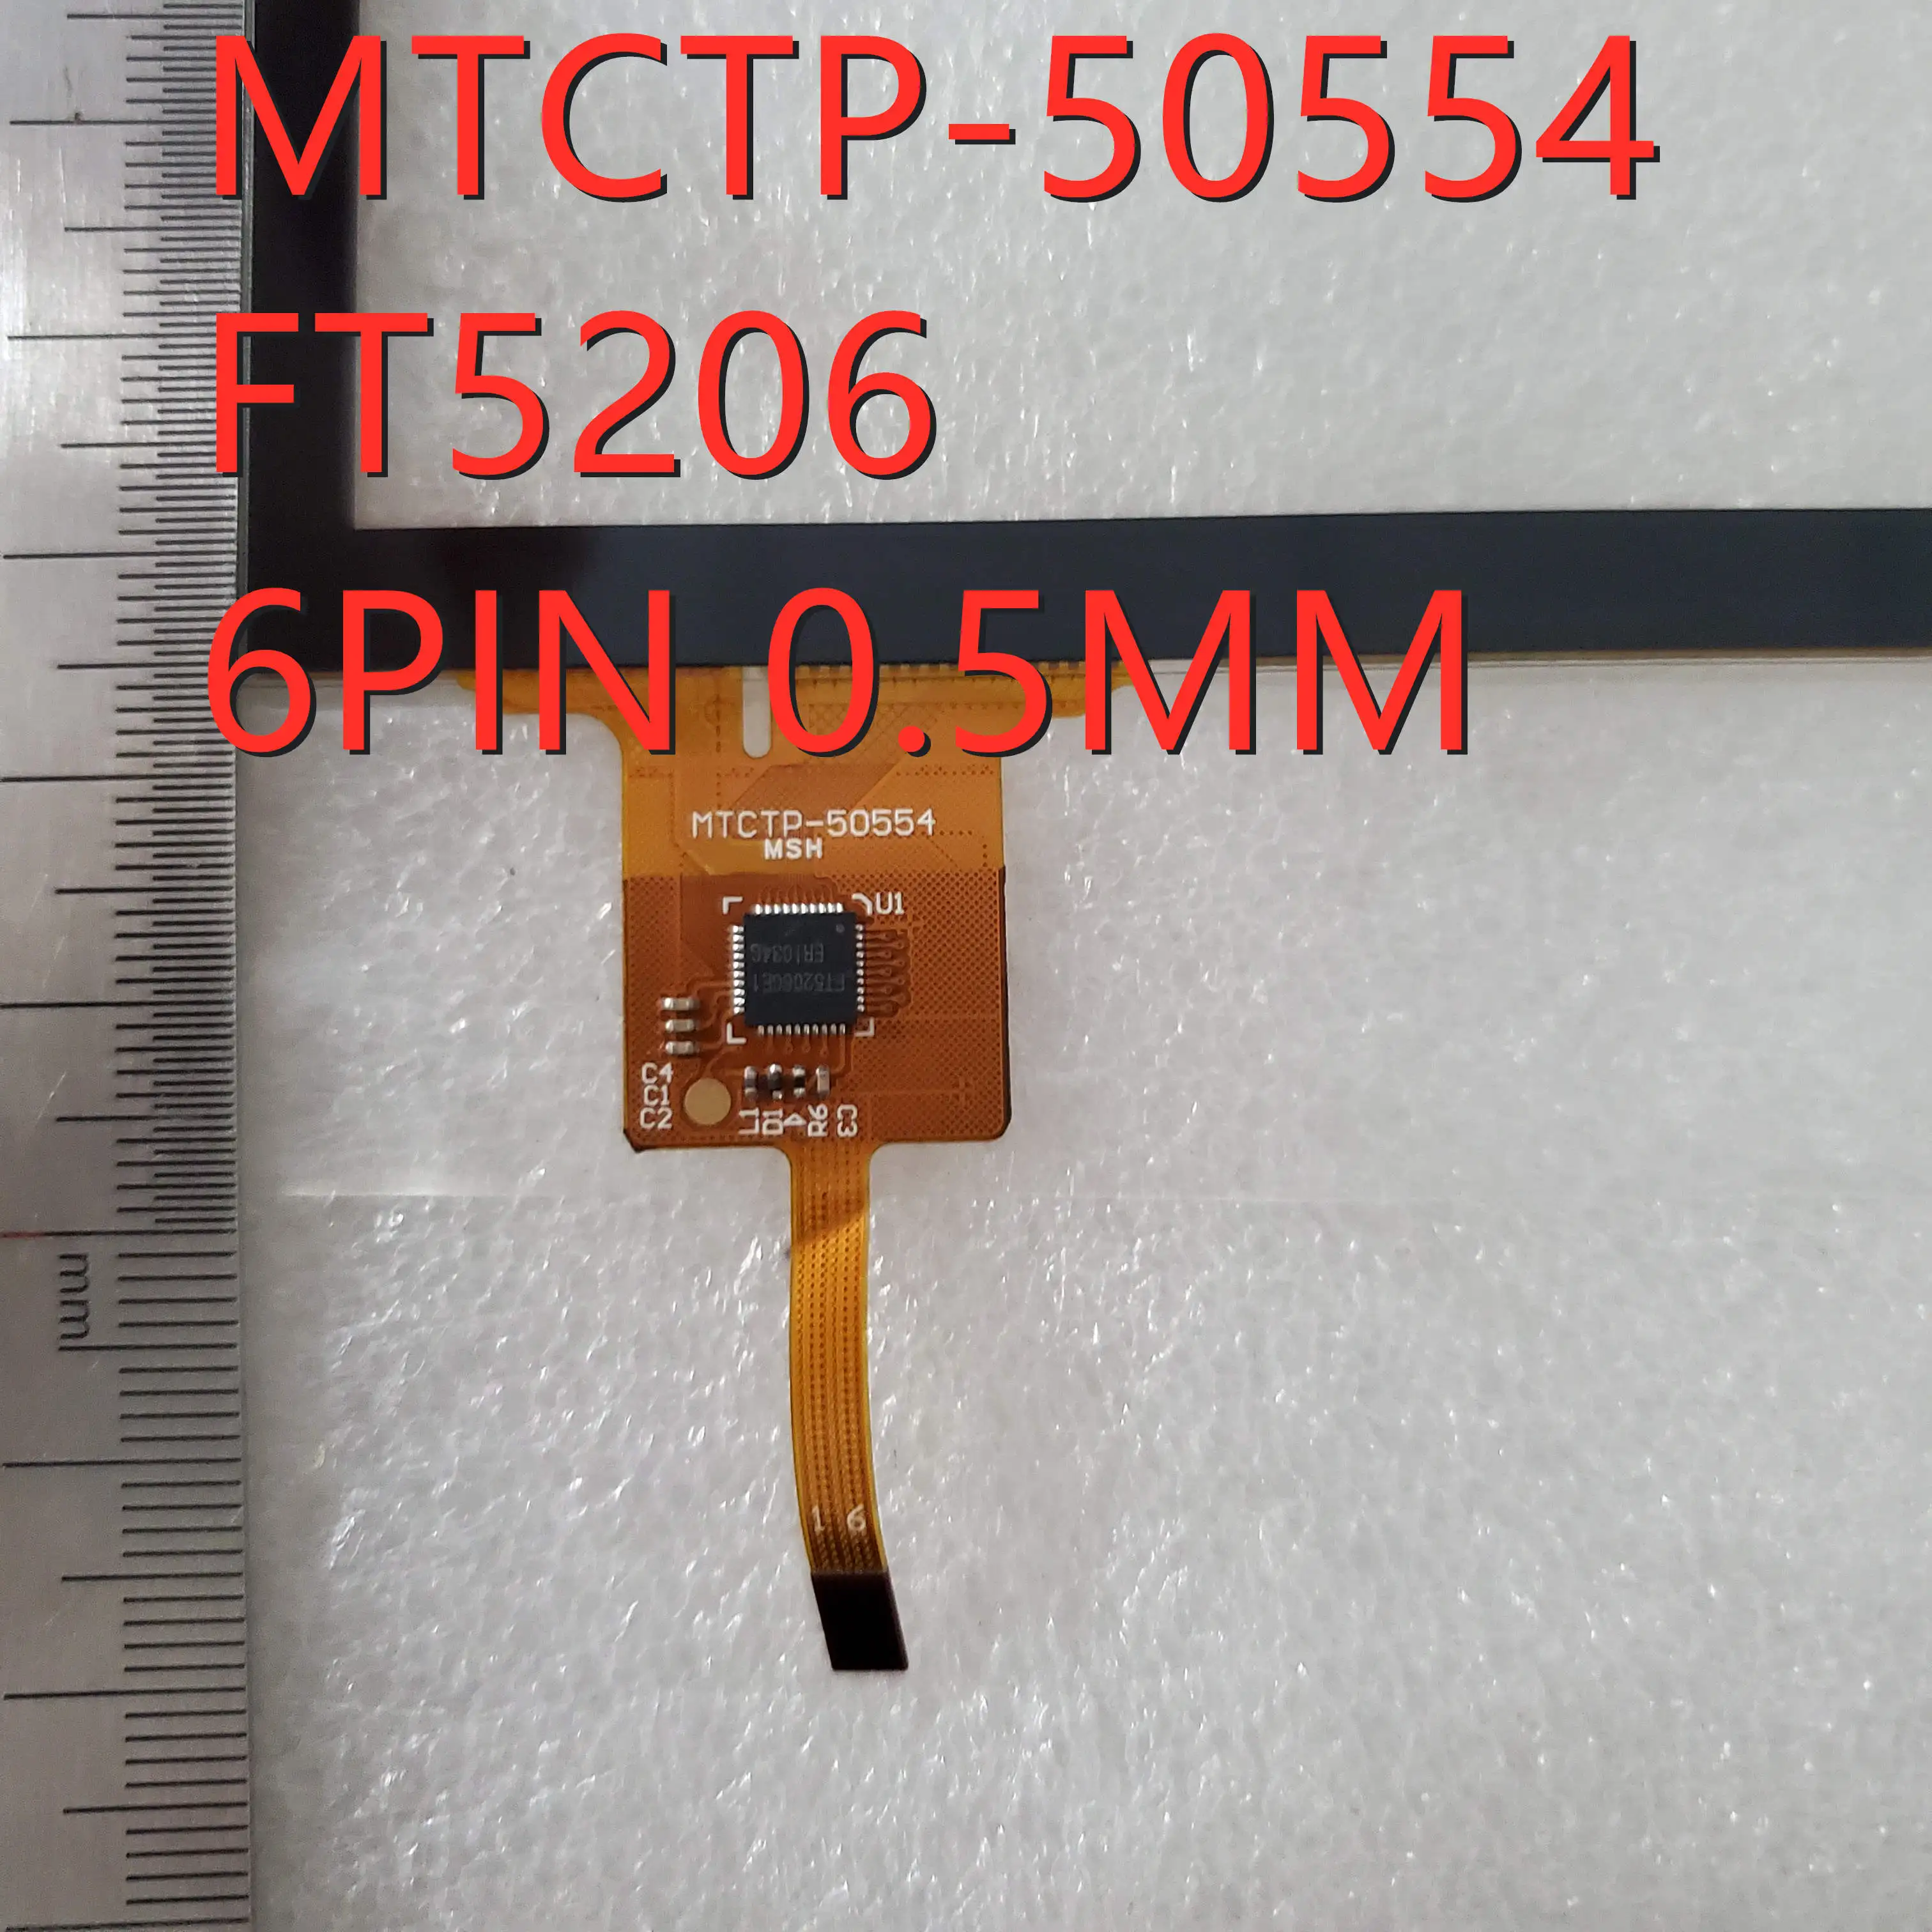 P/N MTCTP-50554 FT5206,